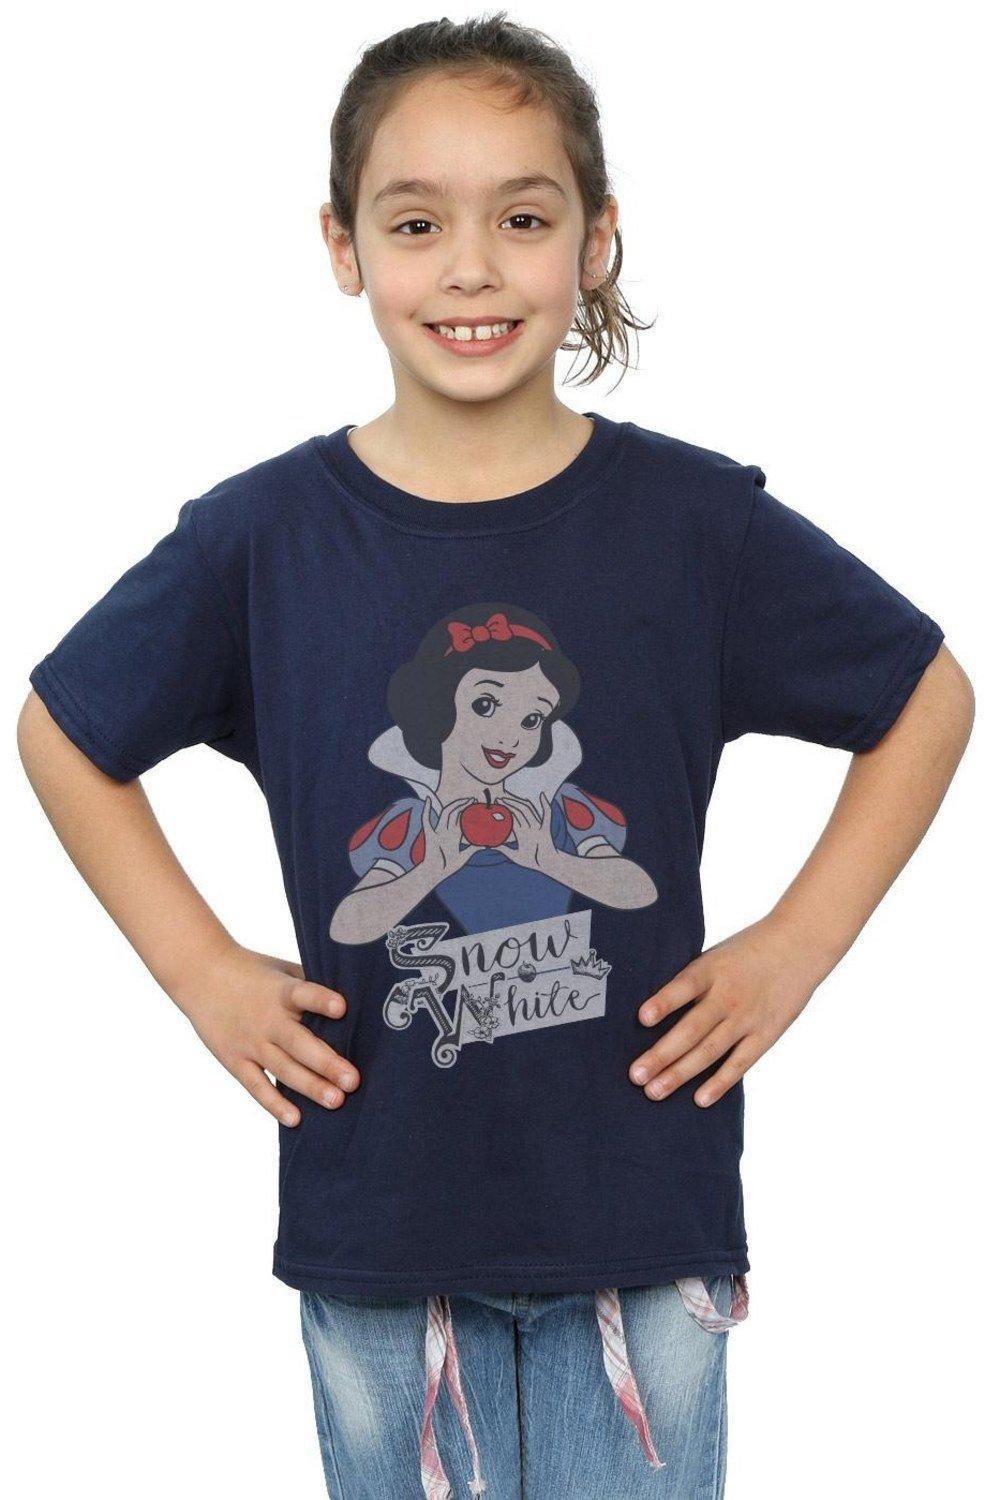 Хлопковая футболка Snow White Apple Disney Princess, темно-синий